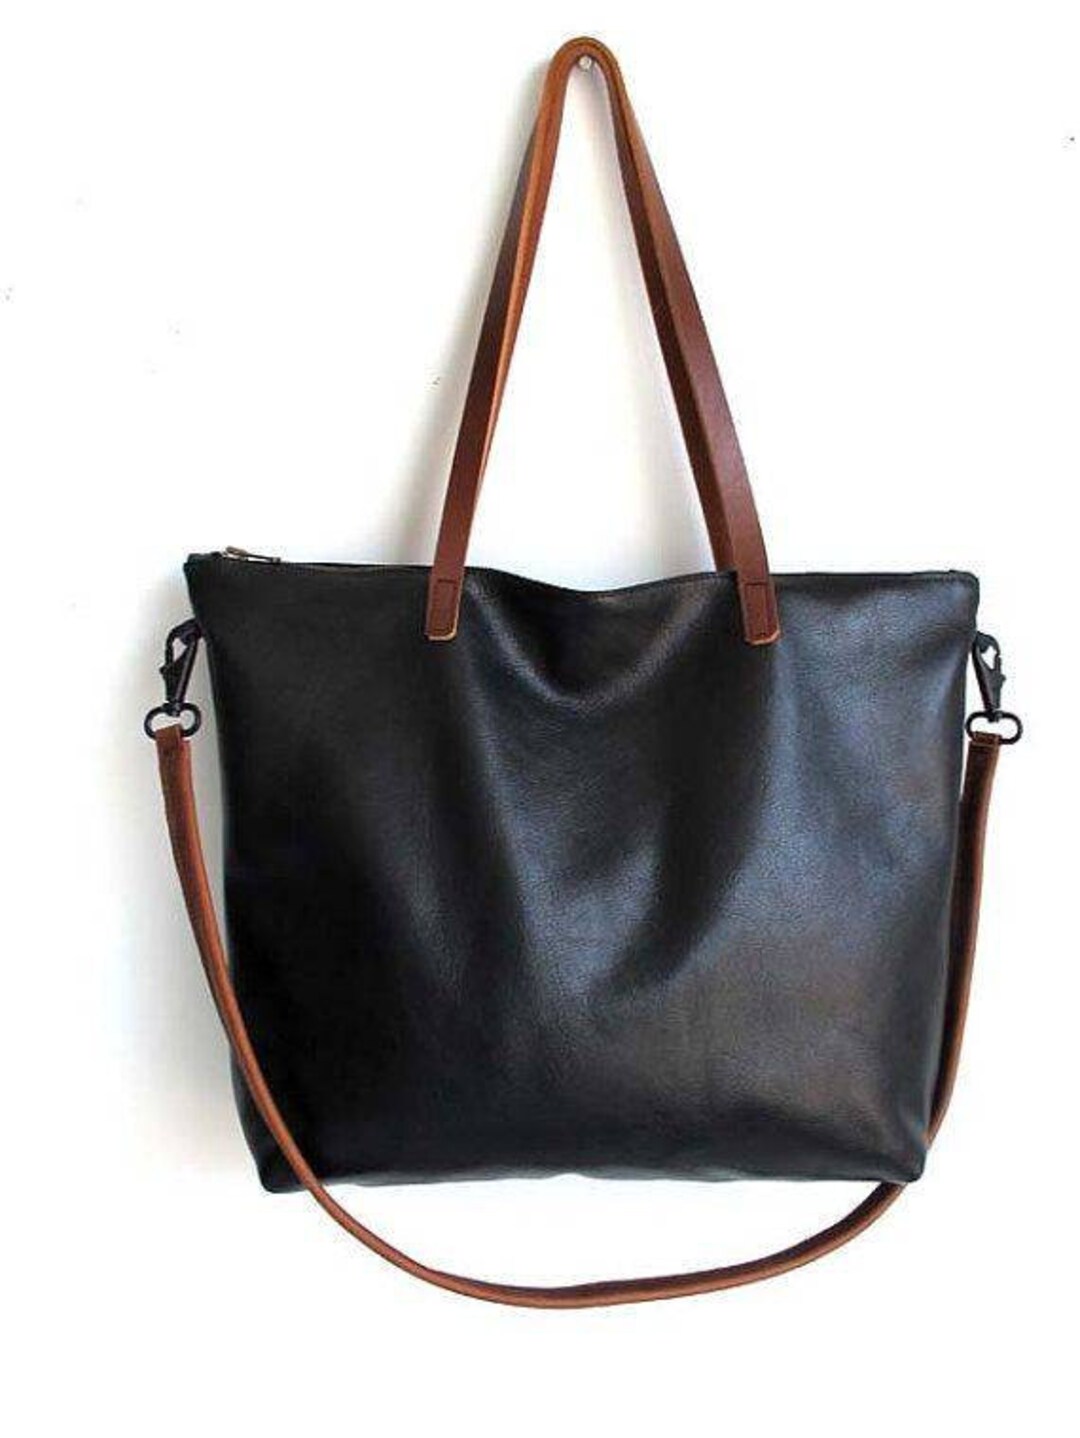 Black Leather Tote Bag for Women Purse Large Work Shoulder Bag - Etsy